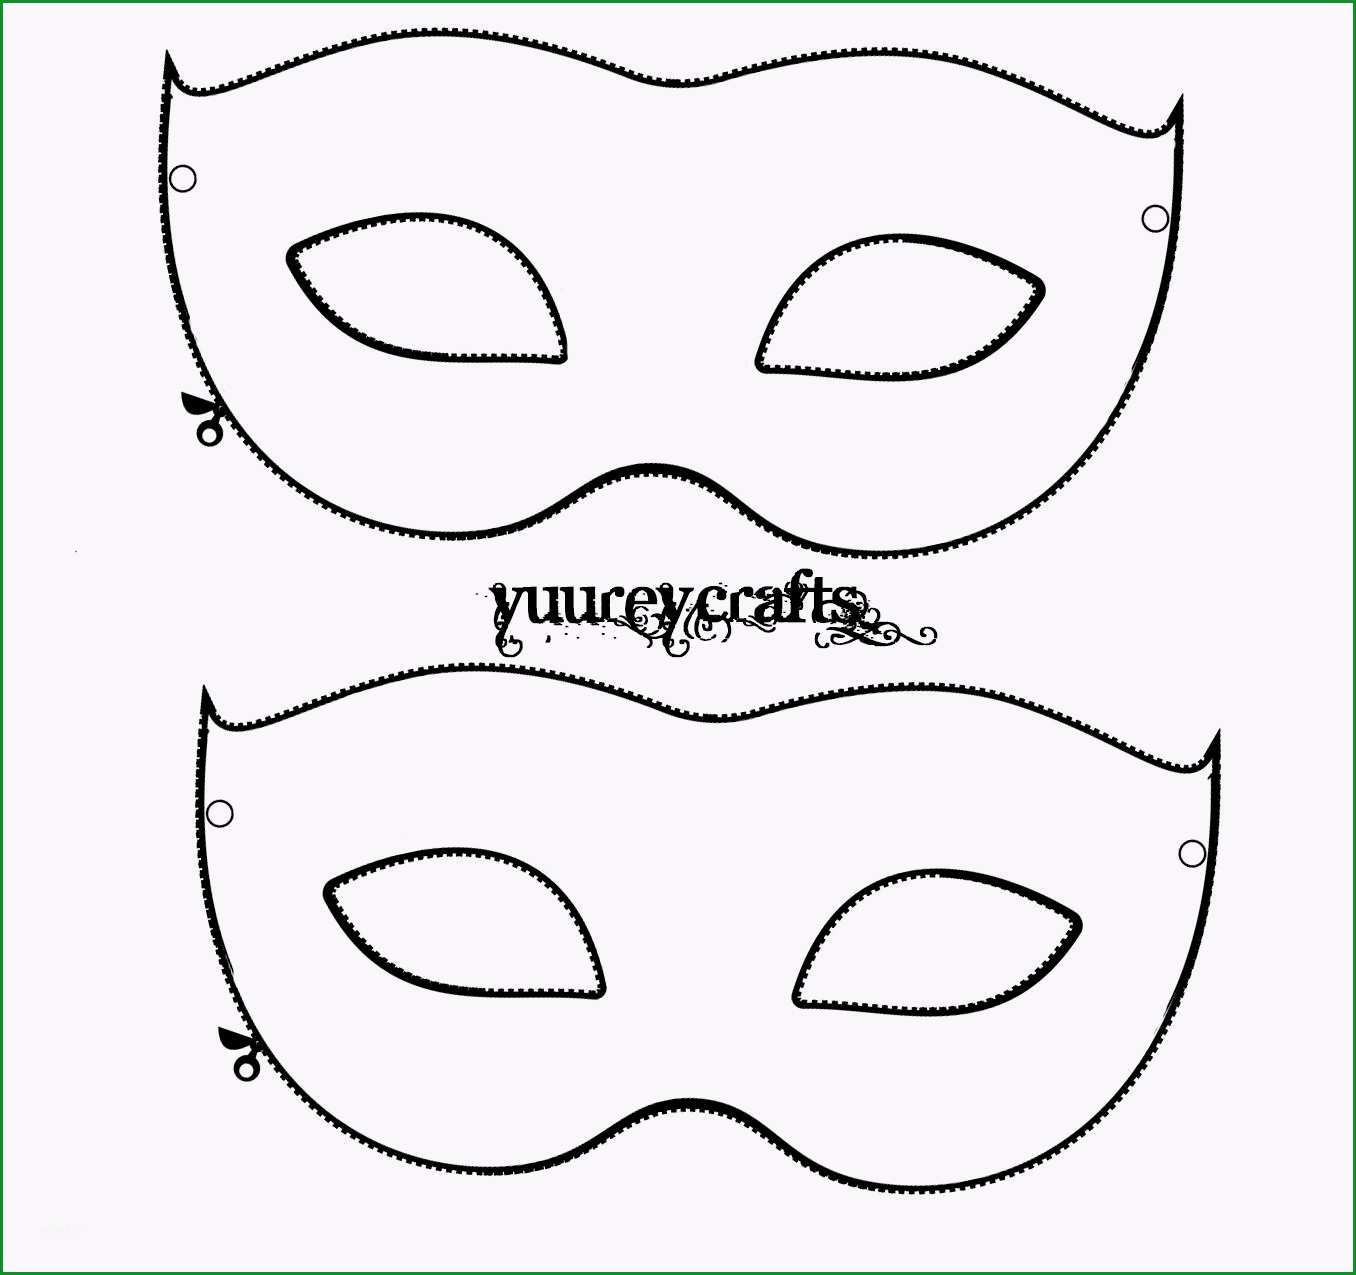 faschingsmaske basteln venezianisch avec venezianische maske vorlage et model 1 venezianische maske vorlage sur la cat gorie dekorationsideen und raumfarben